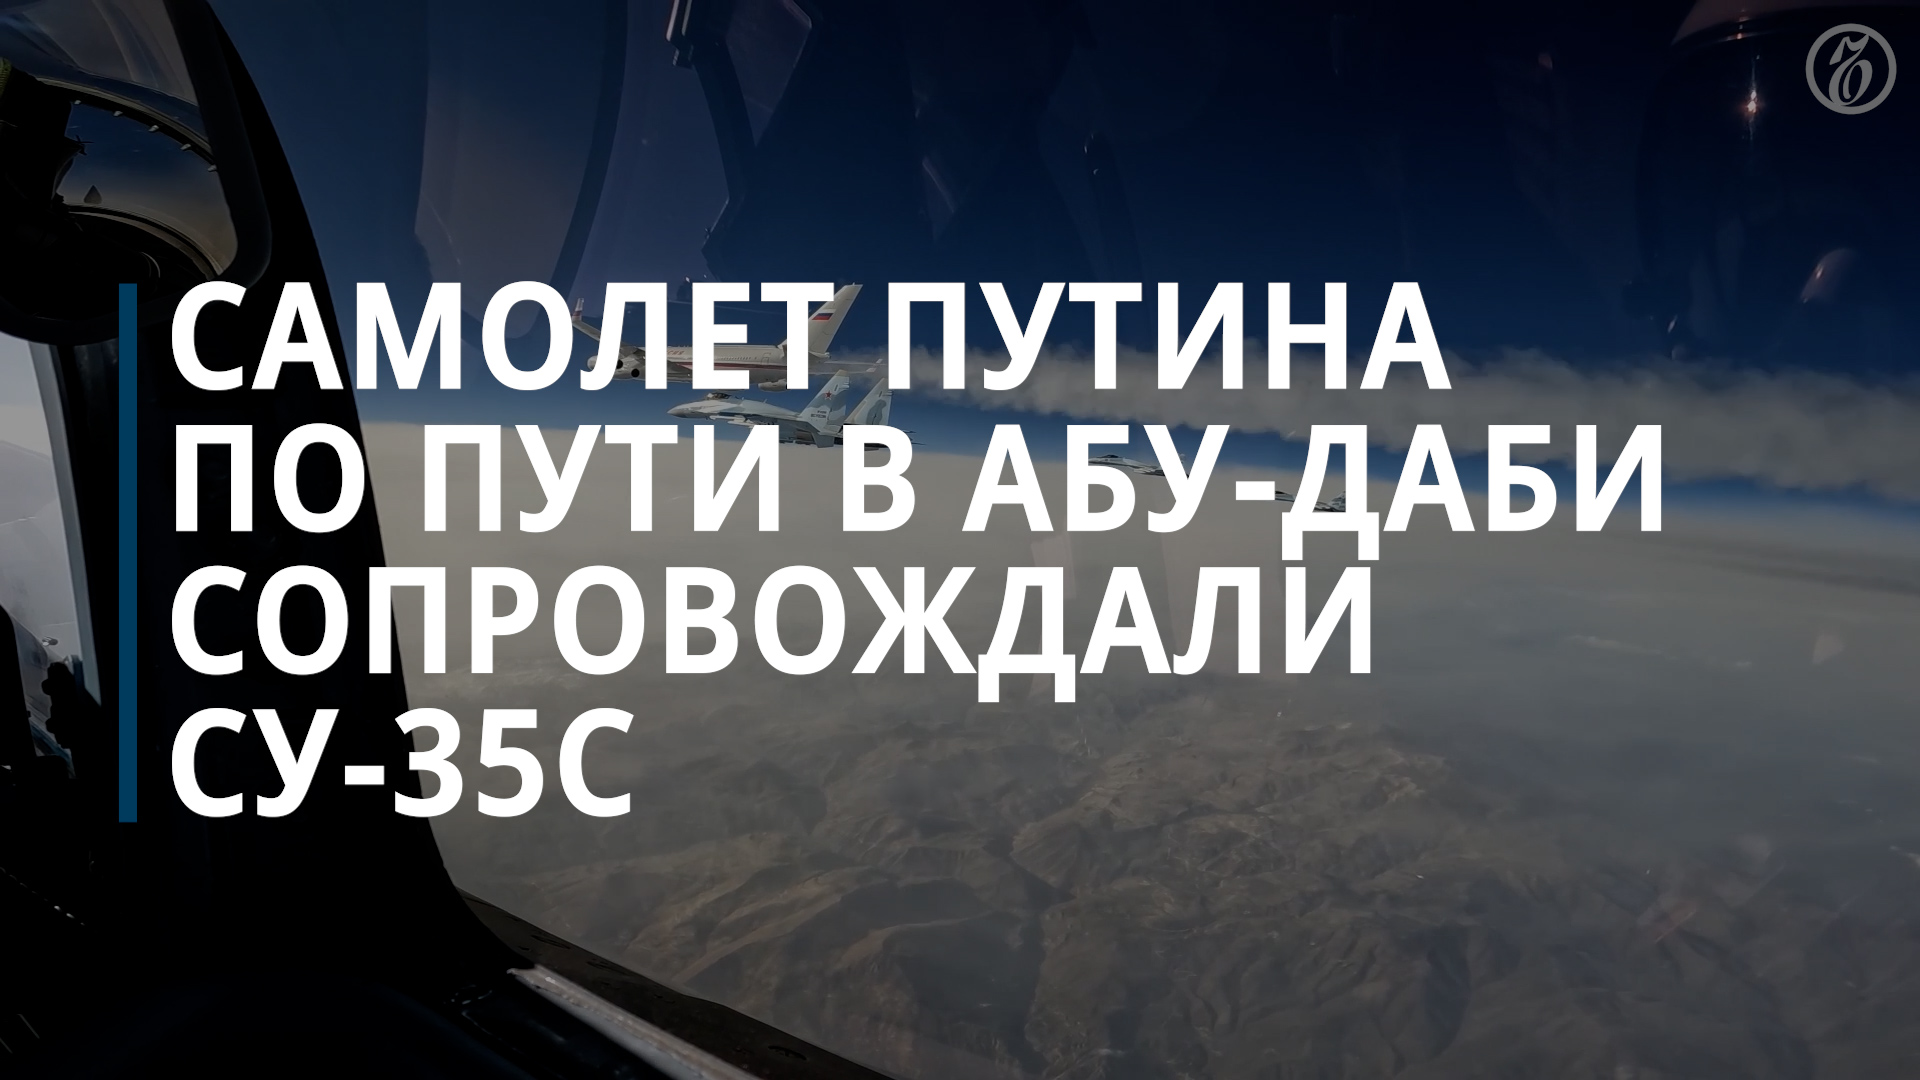 Самолет Путина в Абу-Даби сопровождали истребители Су-35С — Коммерсантъ